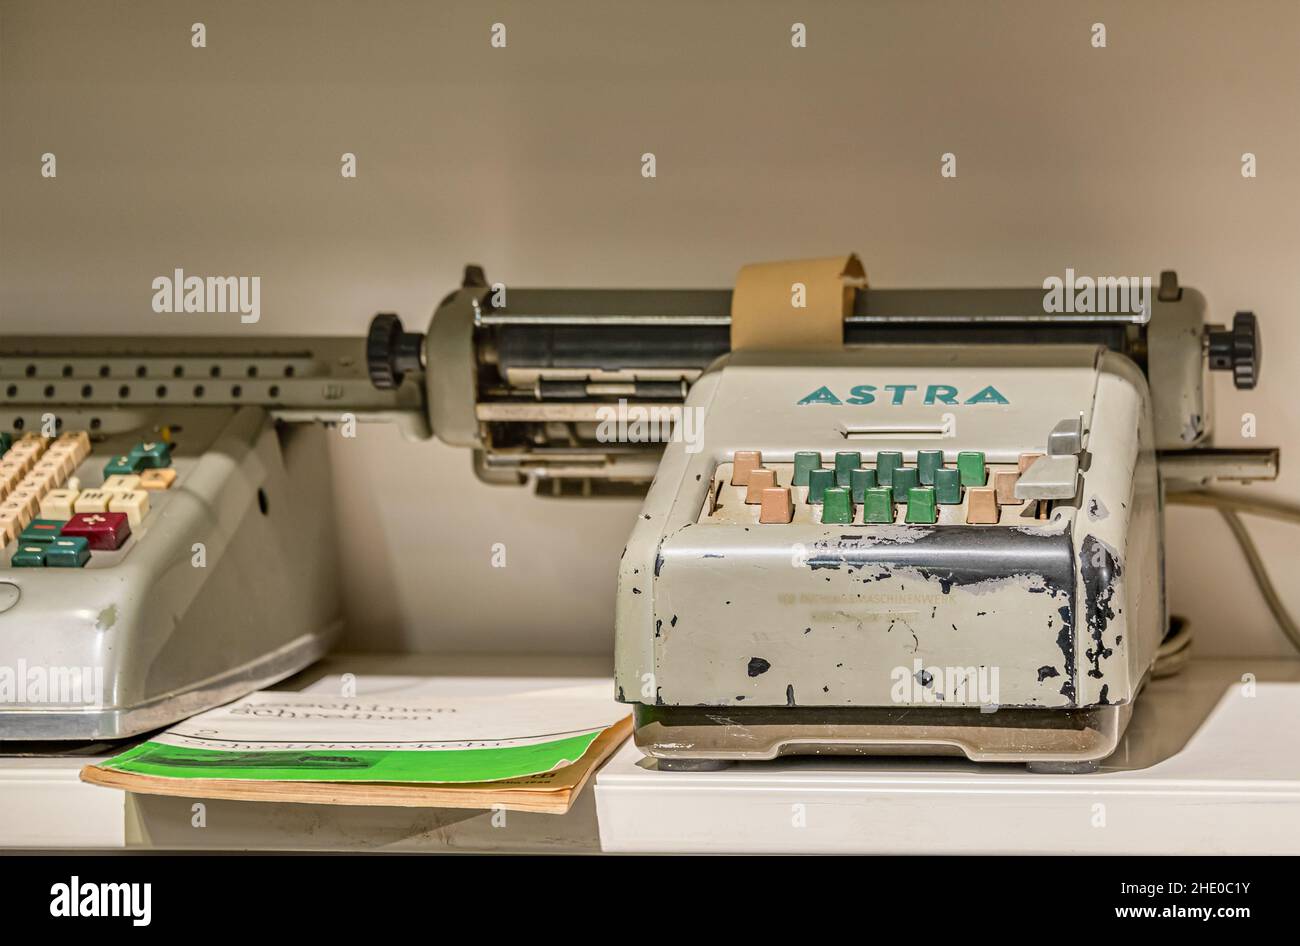 Mechanical calculating machine from the Astrawerke Chemnitz, Germany Stock Photo